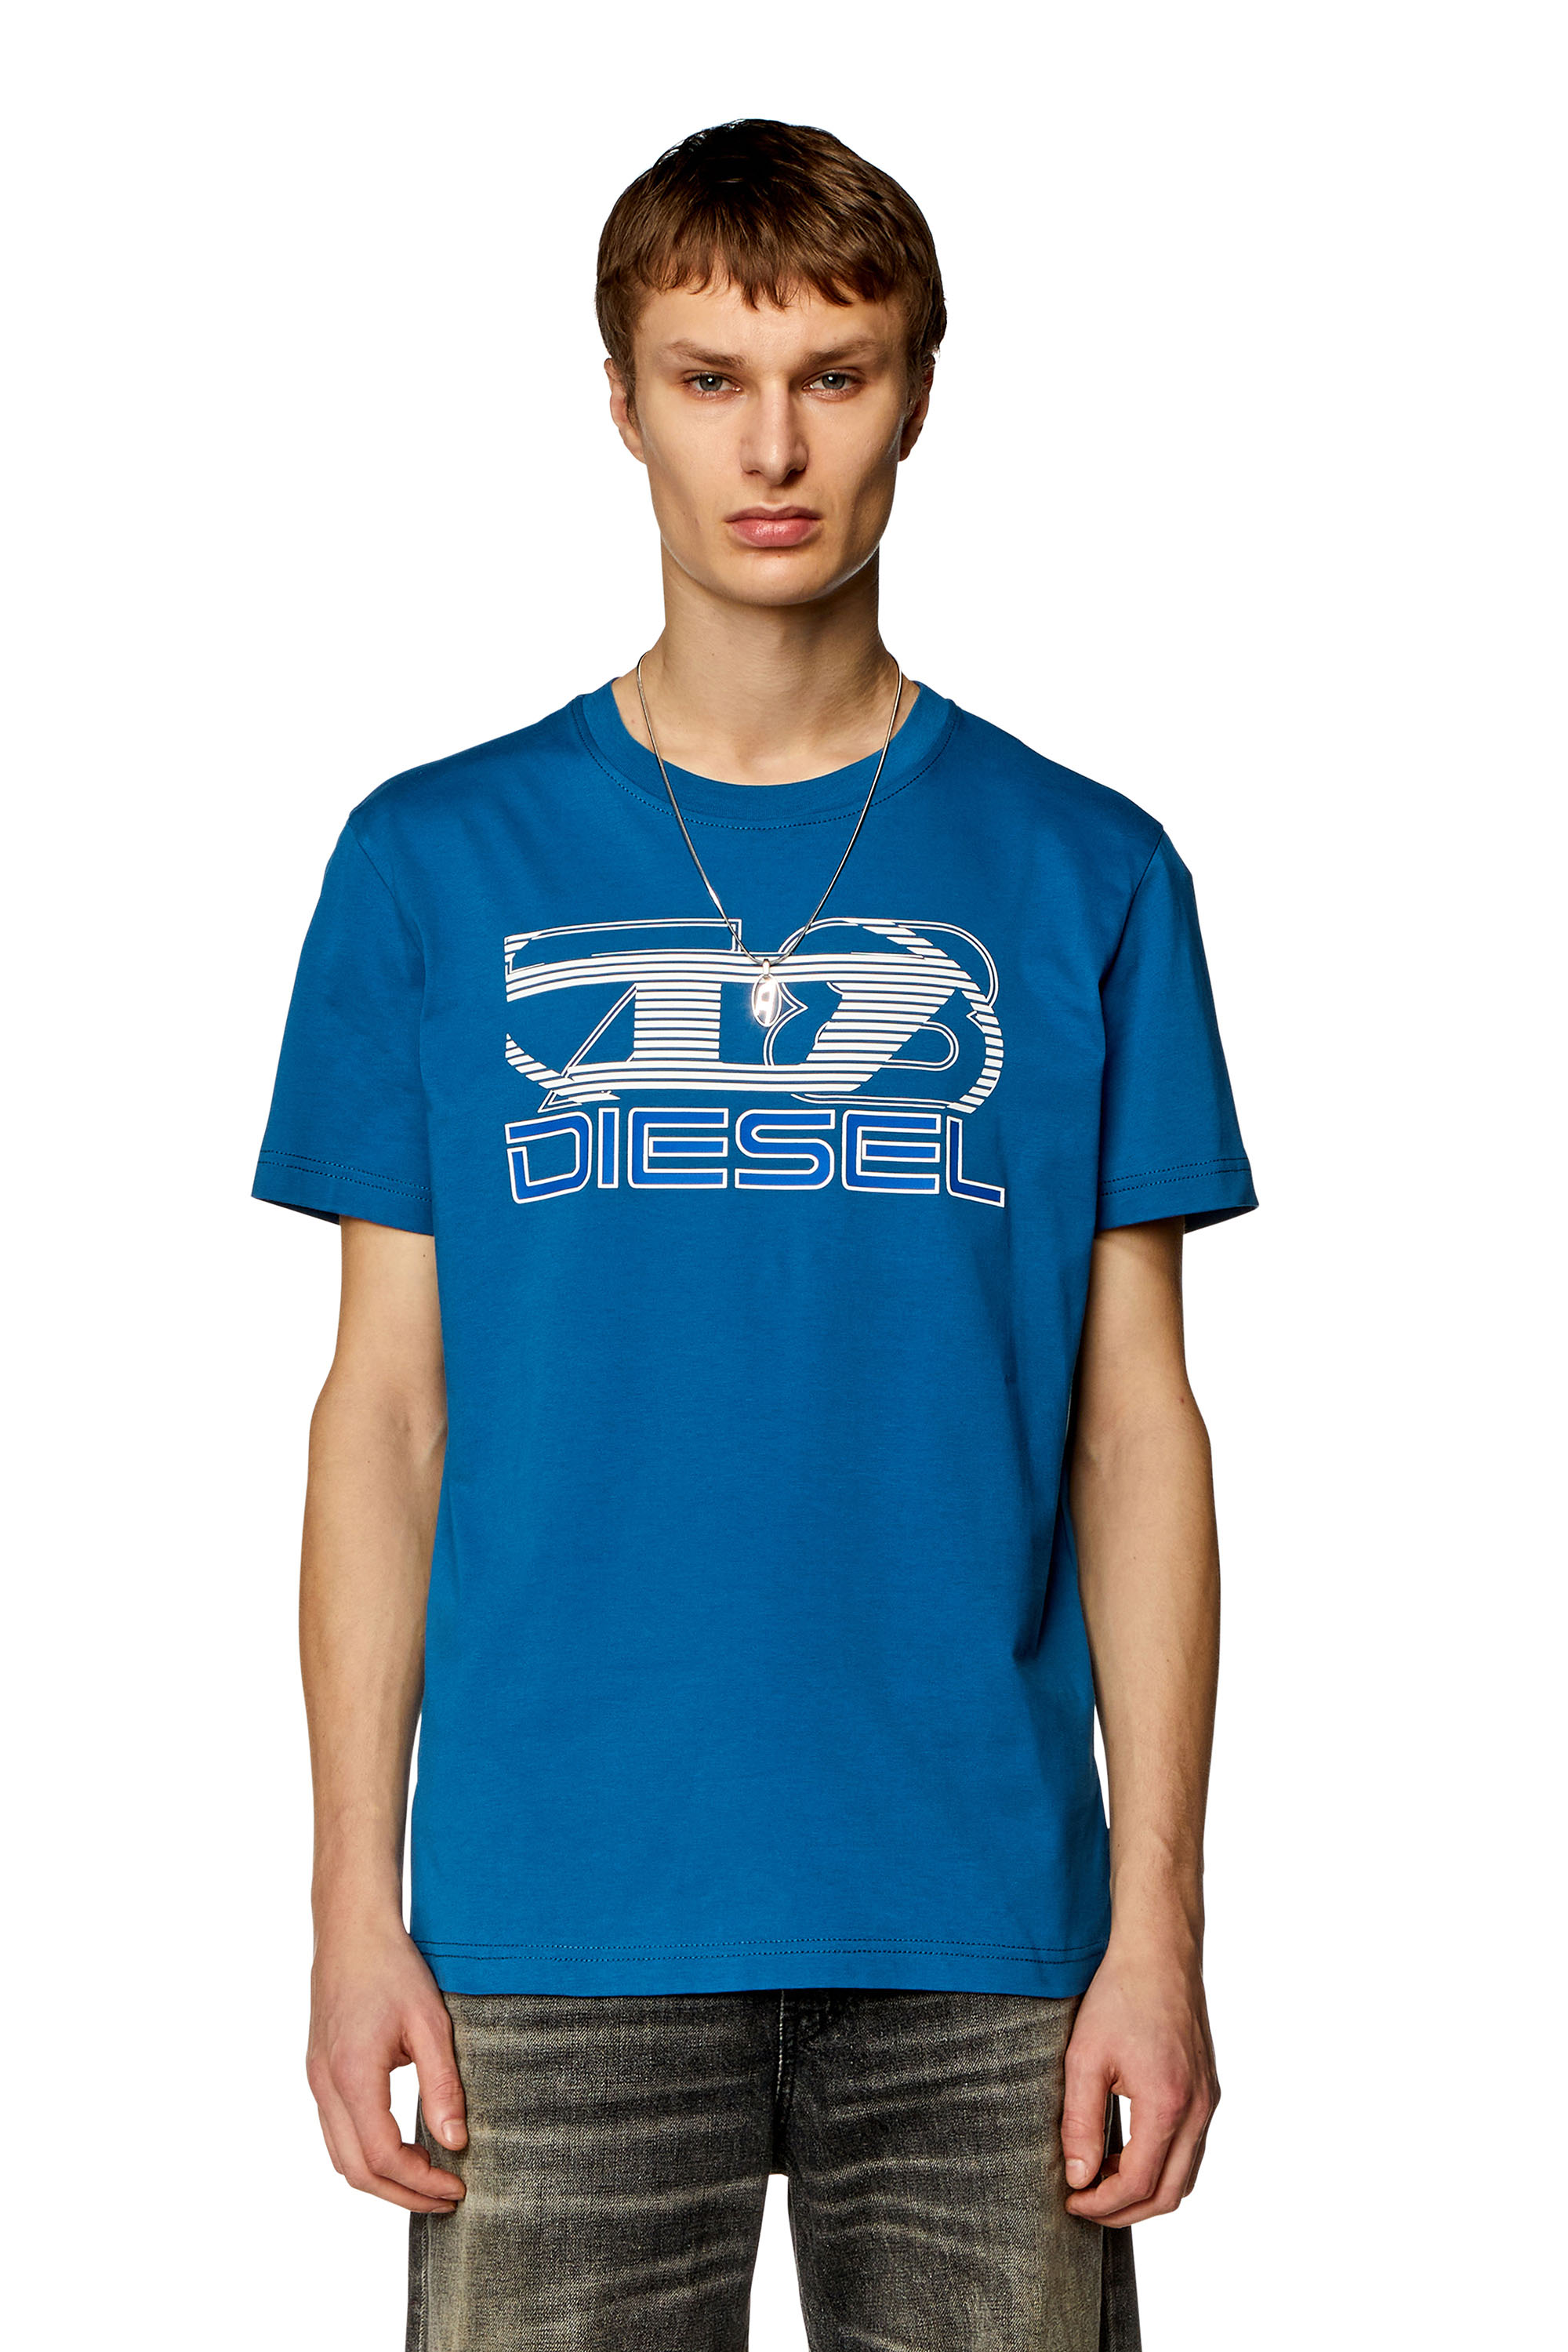 Diesel - Camiseta con estampado Oval D 78 - Camisetas - Hombre - Azul marino